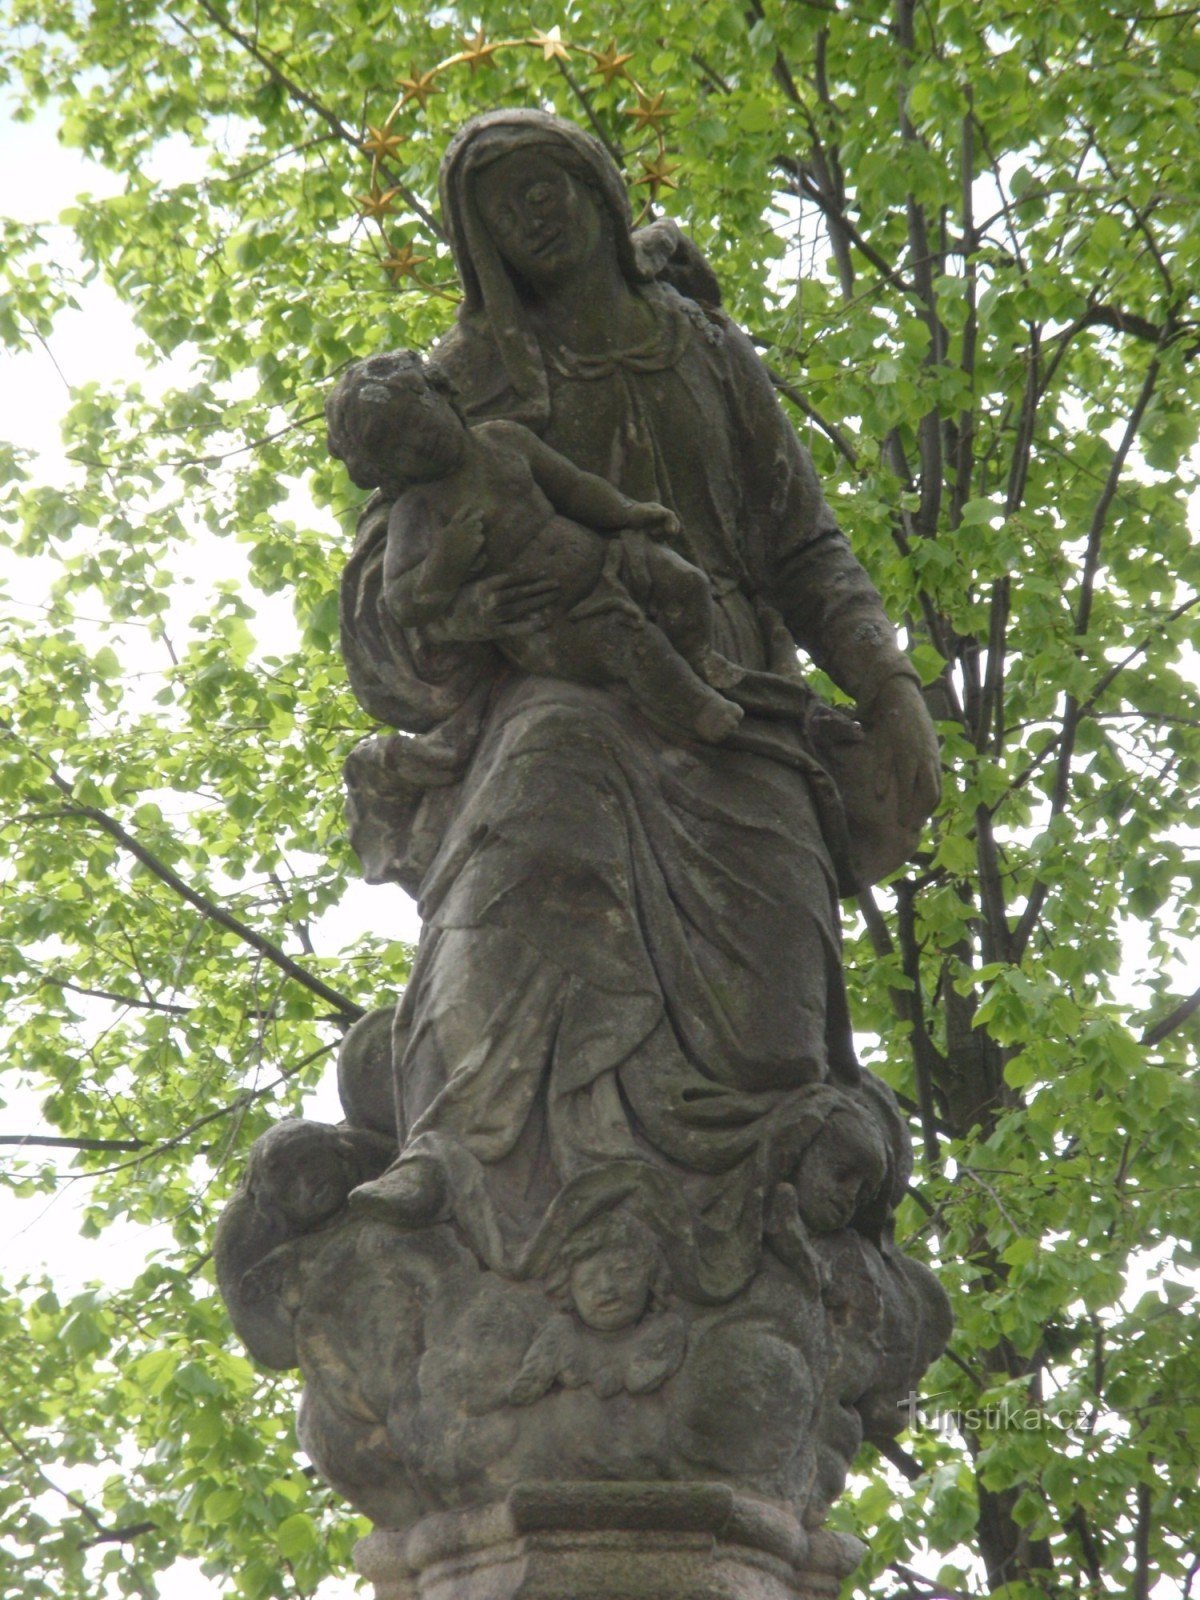 Žďár nad Sázavou - μια στήλη με ένα άγαλμα της Παναγίας